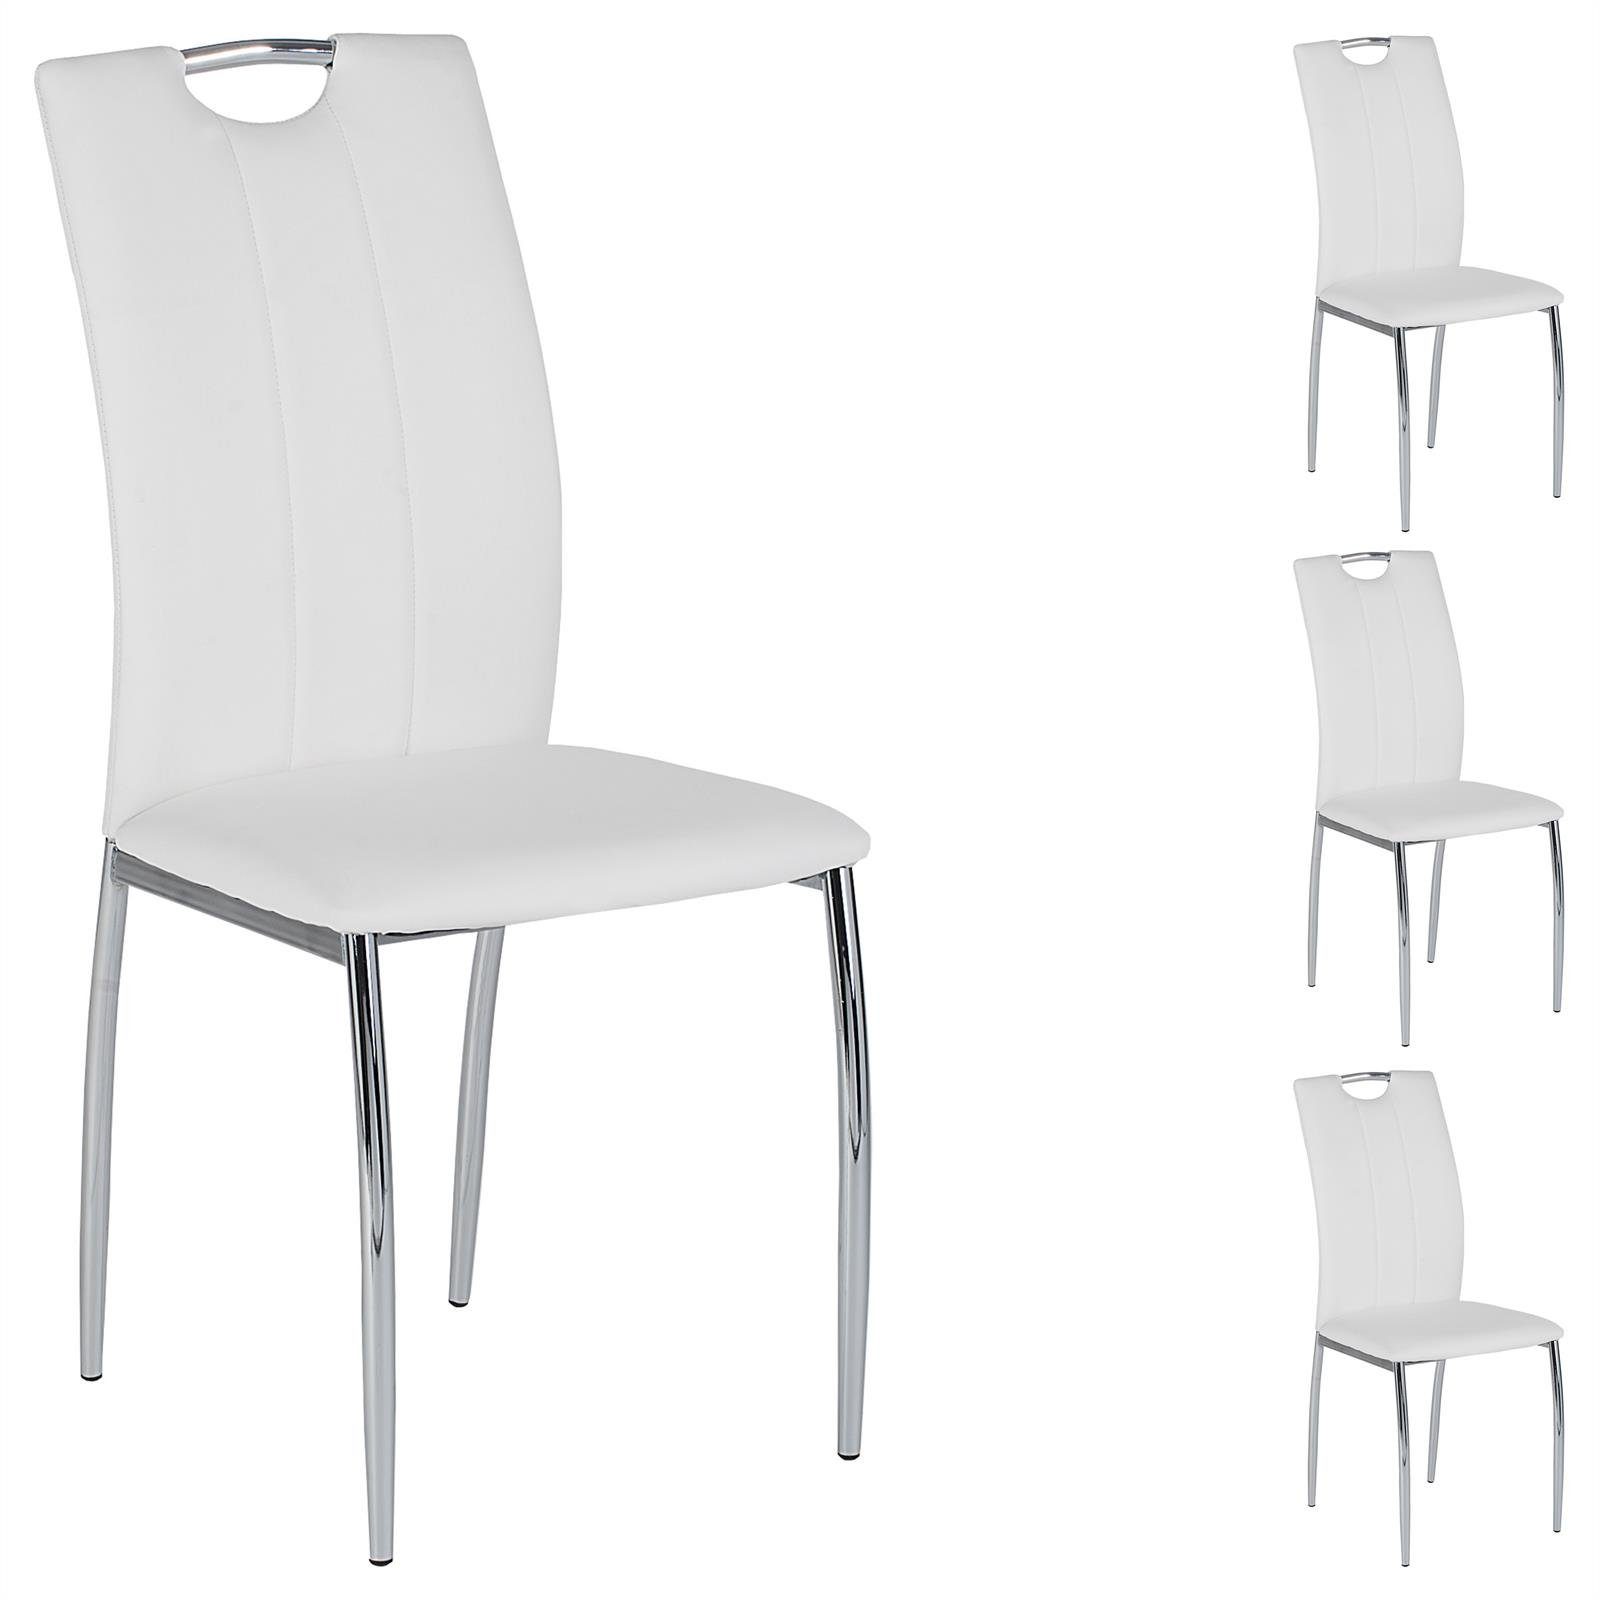 IDIMEX Esszimmerstuhl APOLLO (4 St), 4er SET weiß 4 Esszimmerstuhl Sitzgruppe, wei grau Stühle schwarz Essgruppe